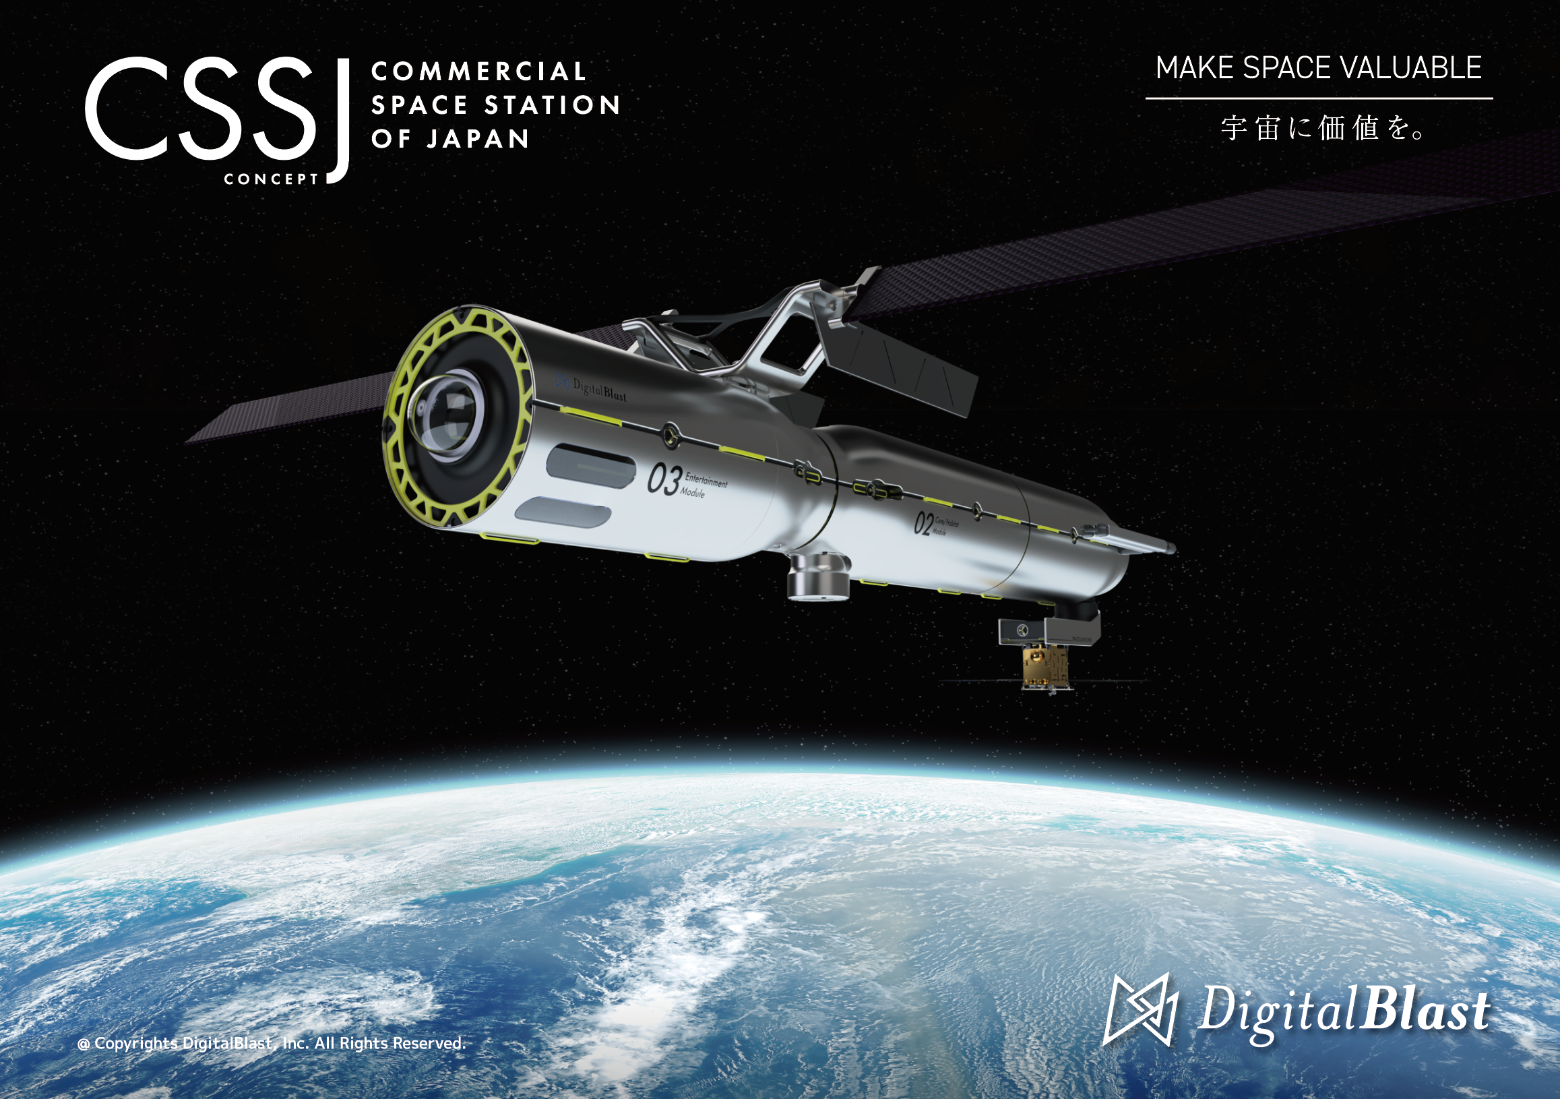 【プレスリリース】DigitalBlast、日本国内初の民間宇宙ステーション（CSS）構想を発表　「ポストISS」へ、LEO経済圏と惑星間経済圏の創出と融合の拠点の構築を目指す